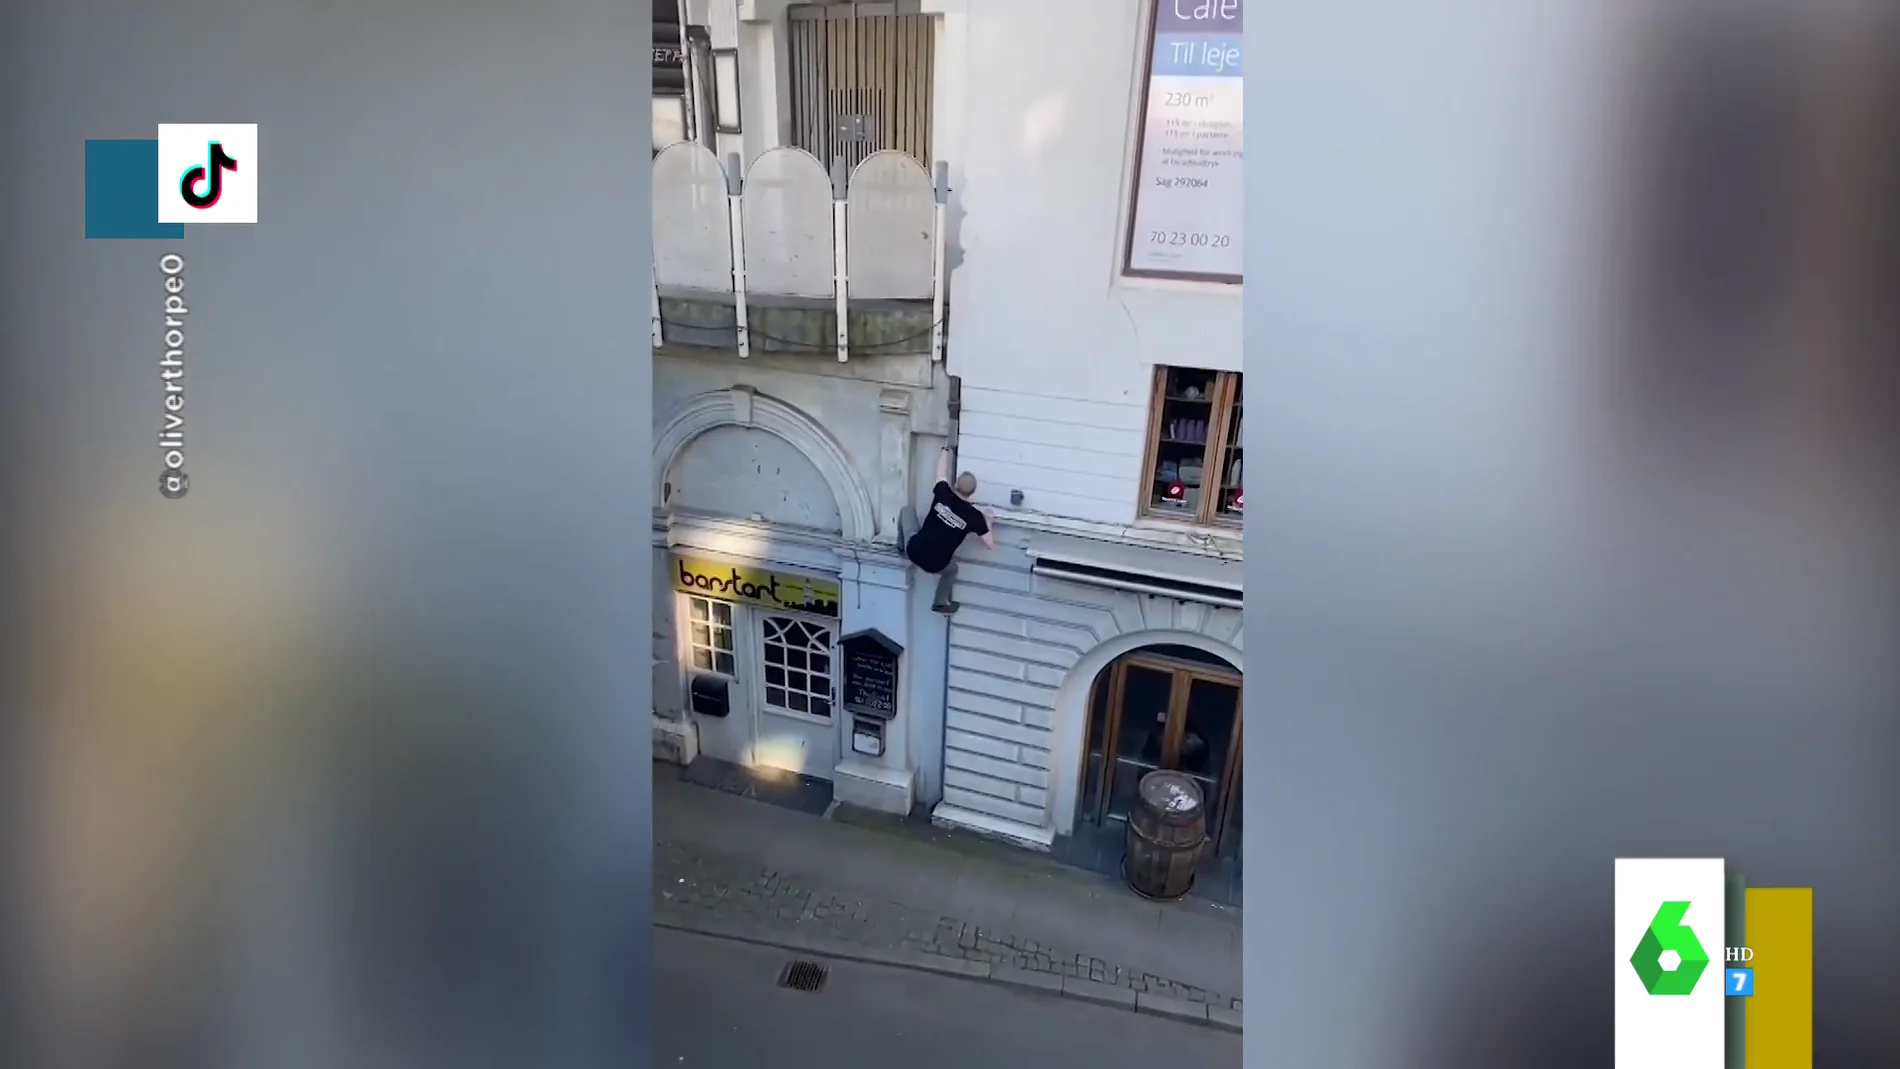 La escalada de vértigo de un joven hasta su balcón al más puro estilo 'Assassins creed'